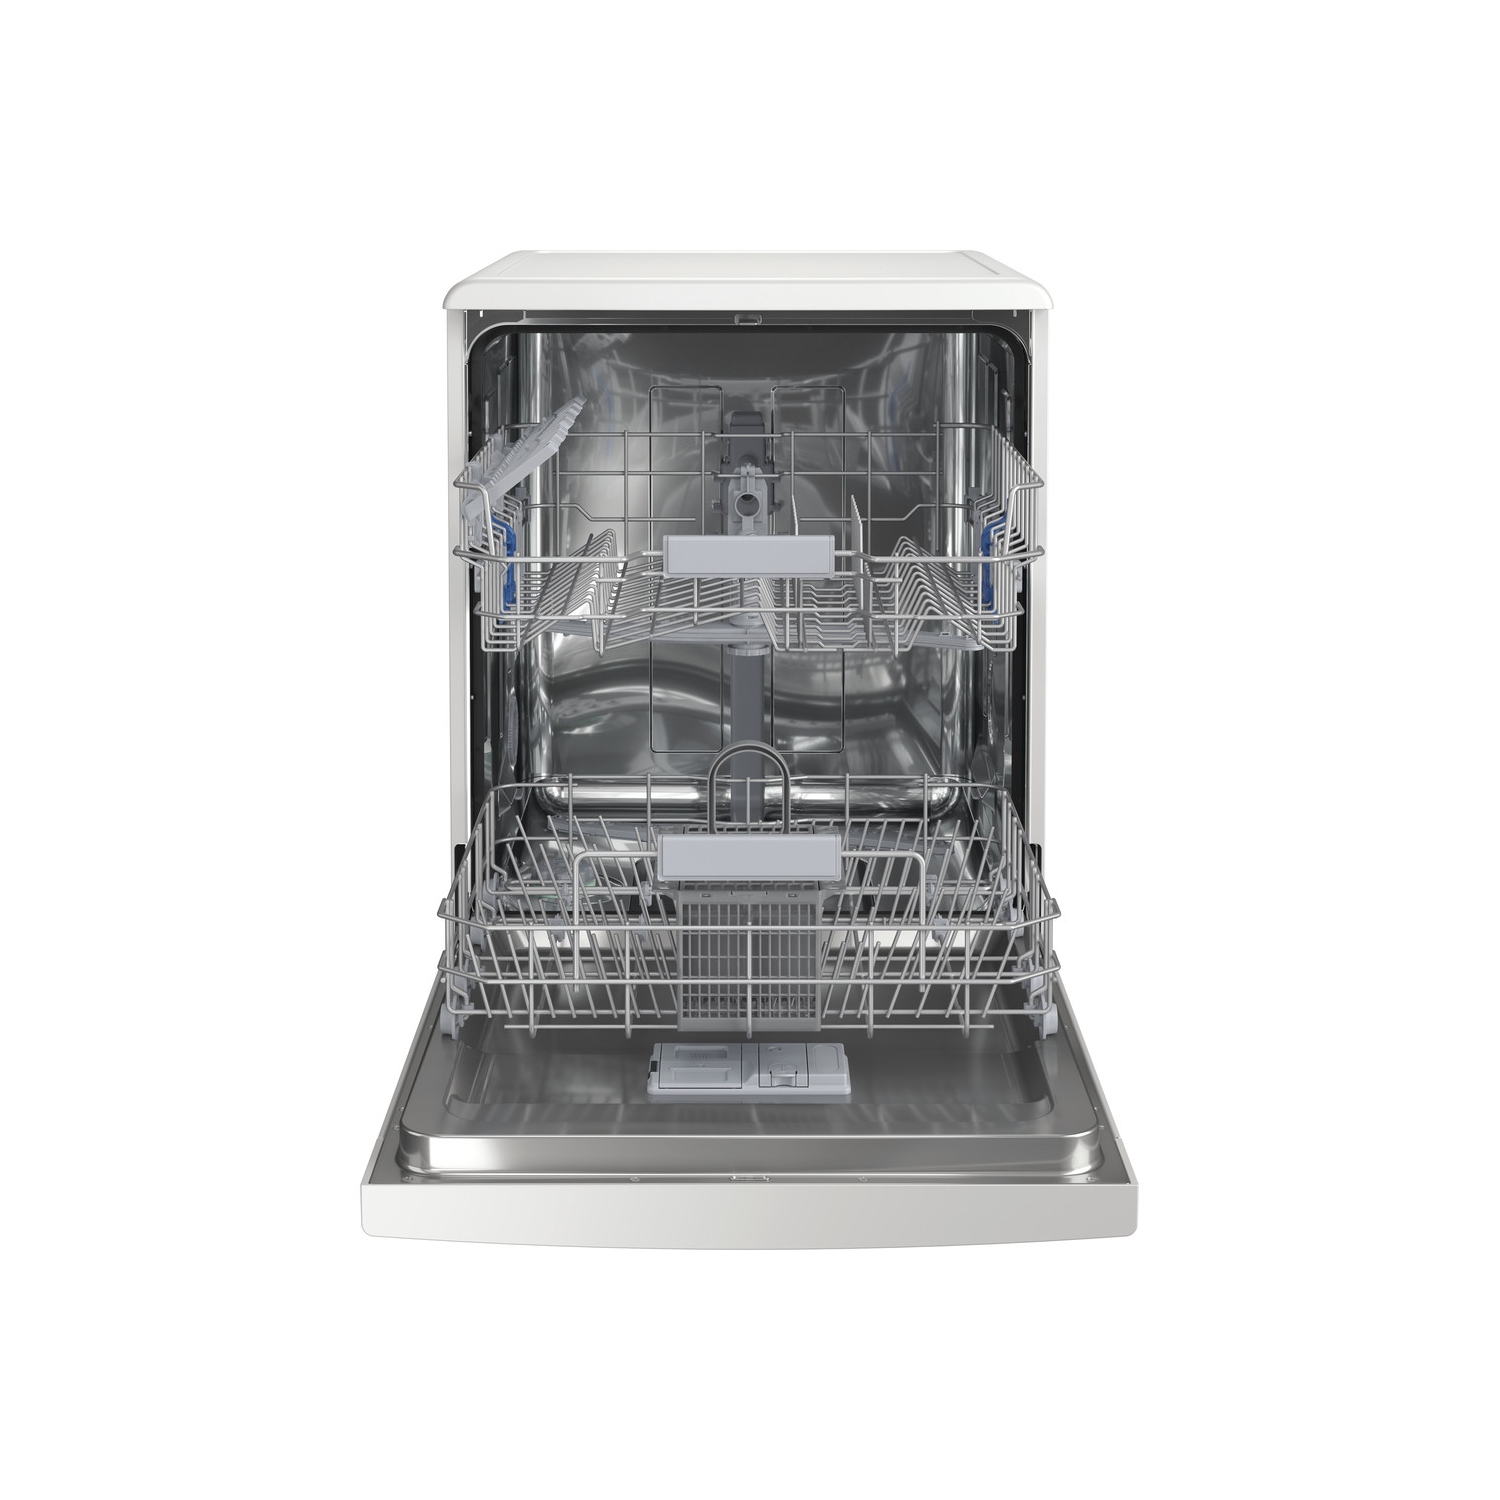 Indesit DFC2B16UK Full Size Dishwasher - White - 13 Place Settings - 3